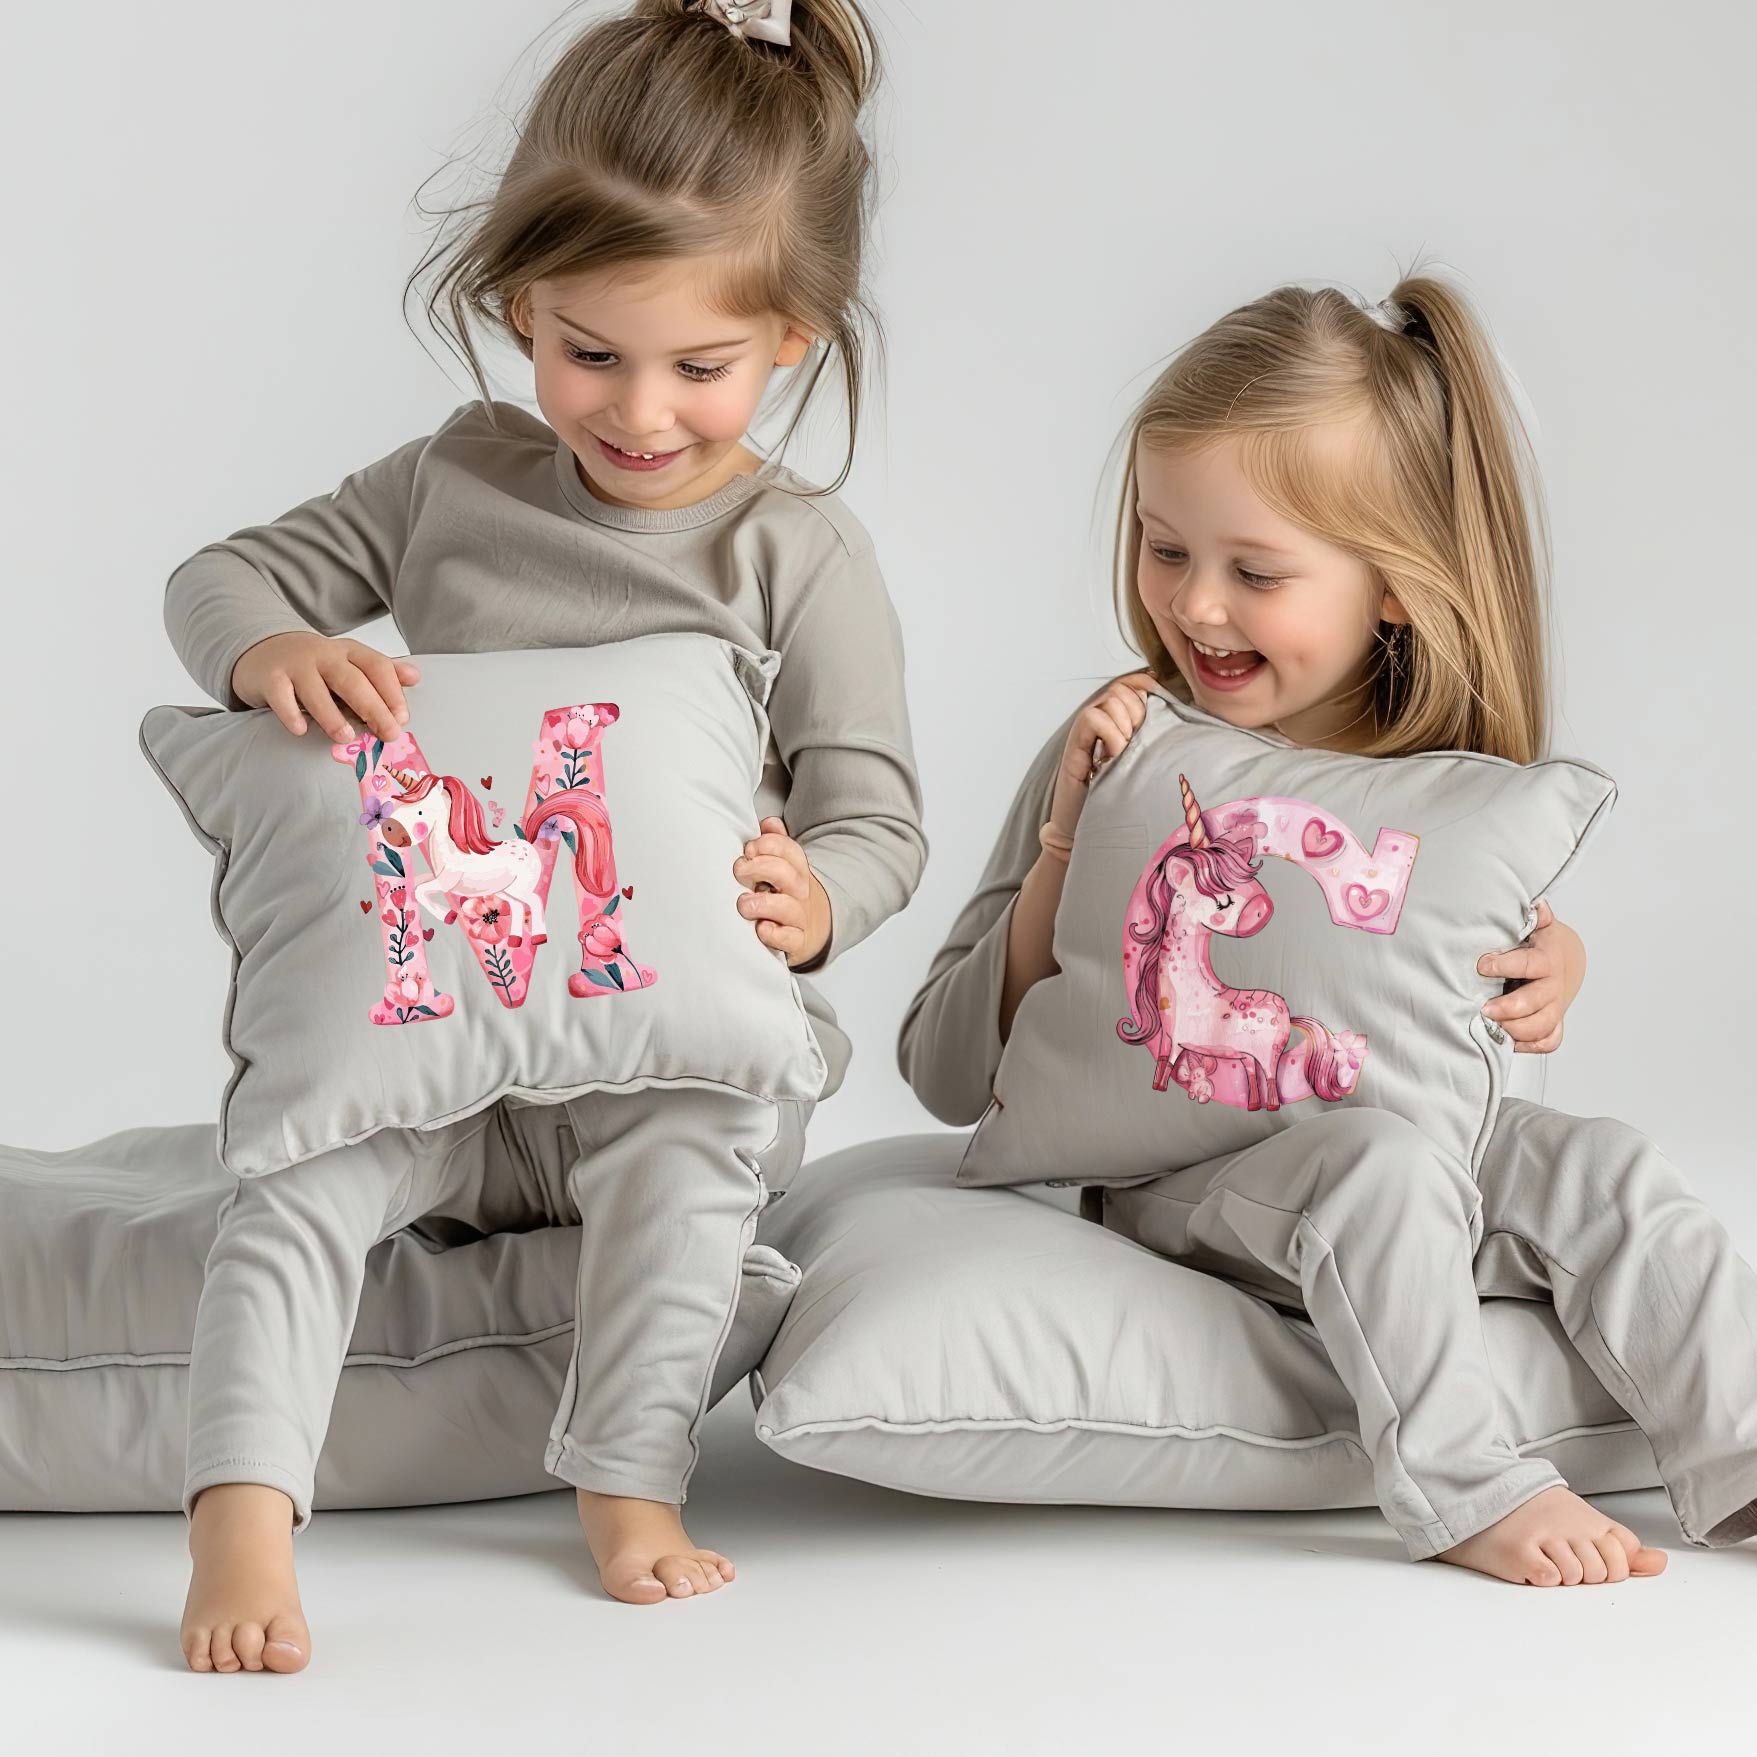 Detská nažehlovačka na vankúšik - písmeno M a C s jednorožcom, deti v pyžame